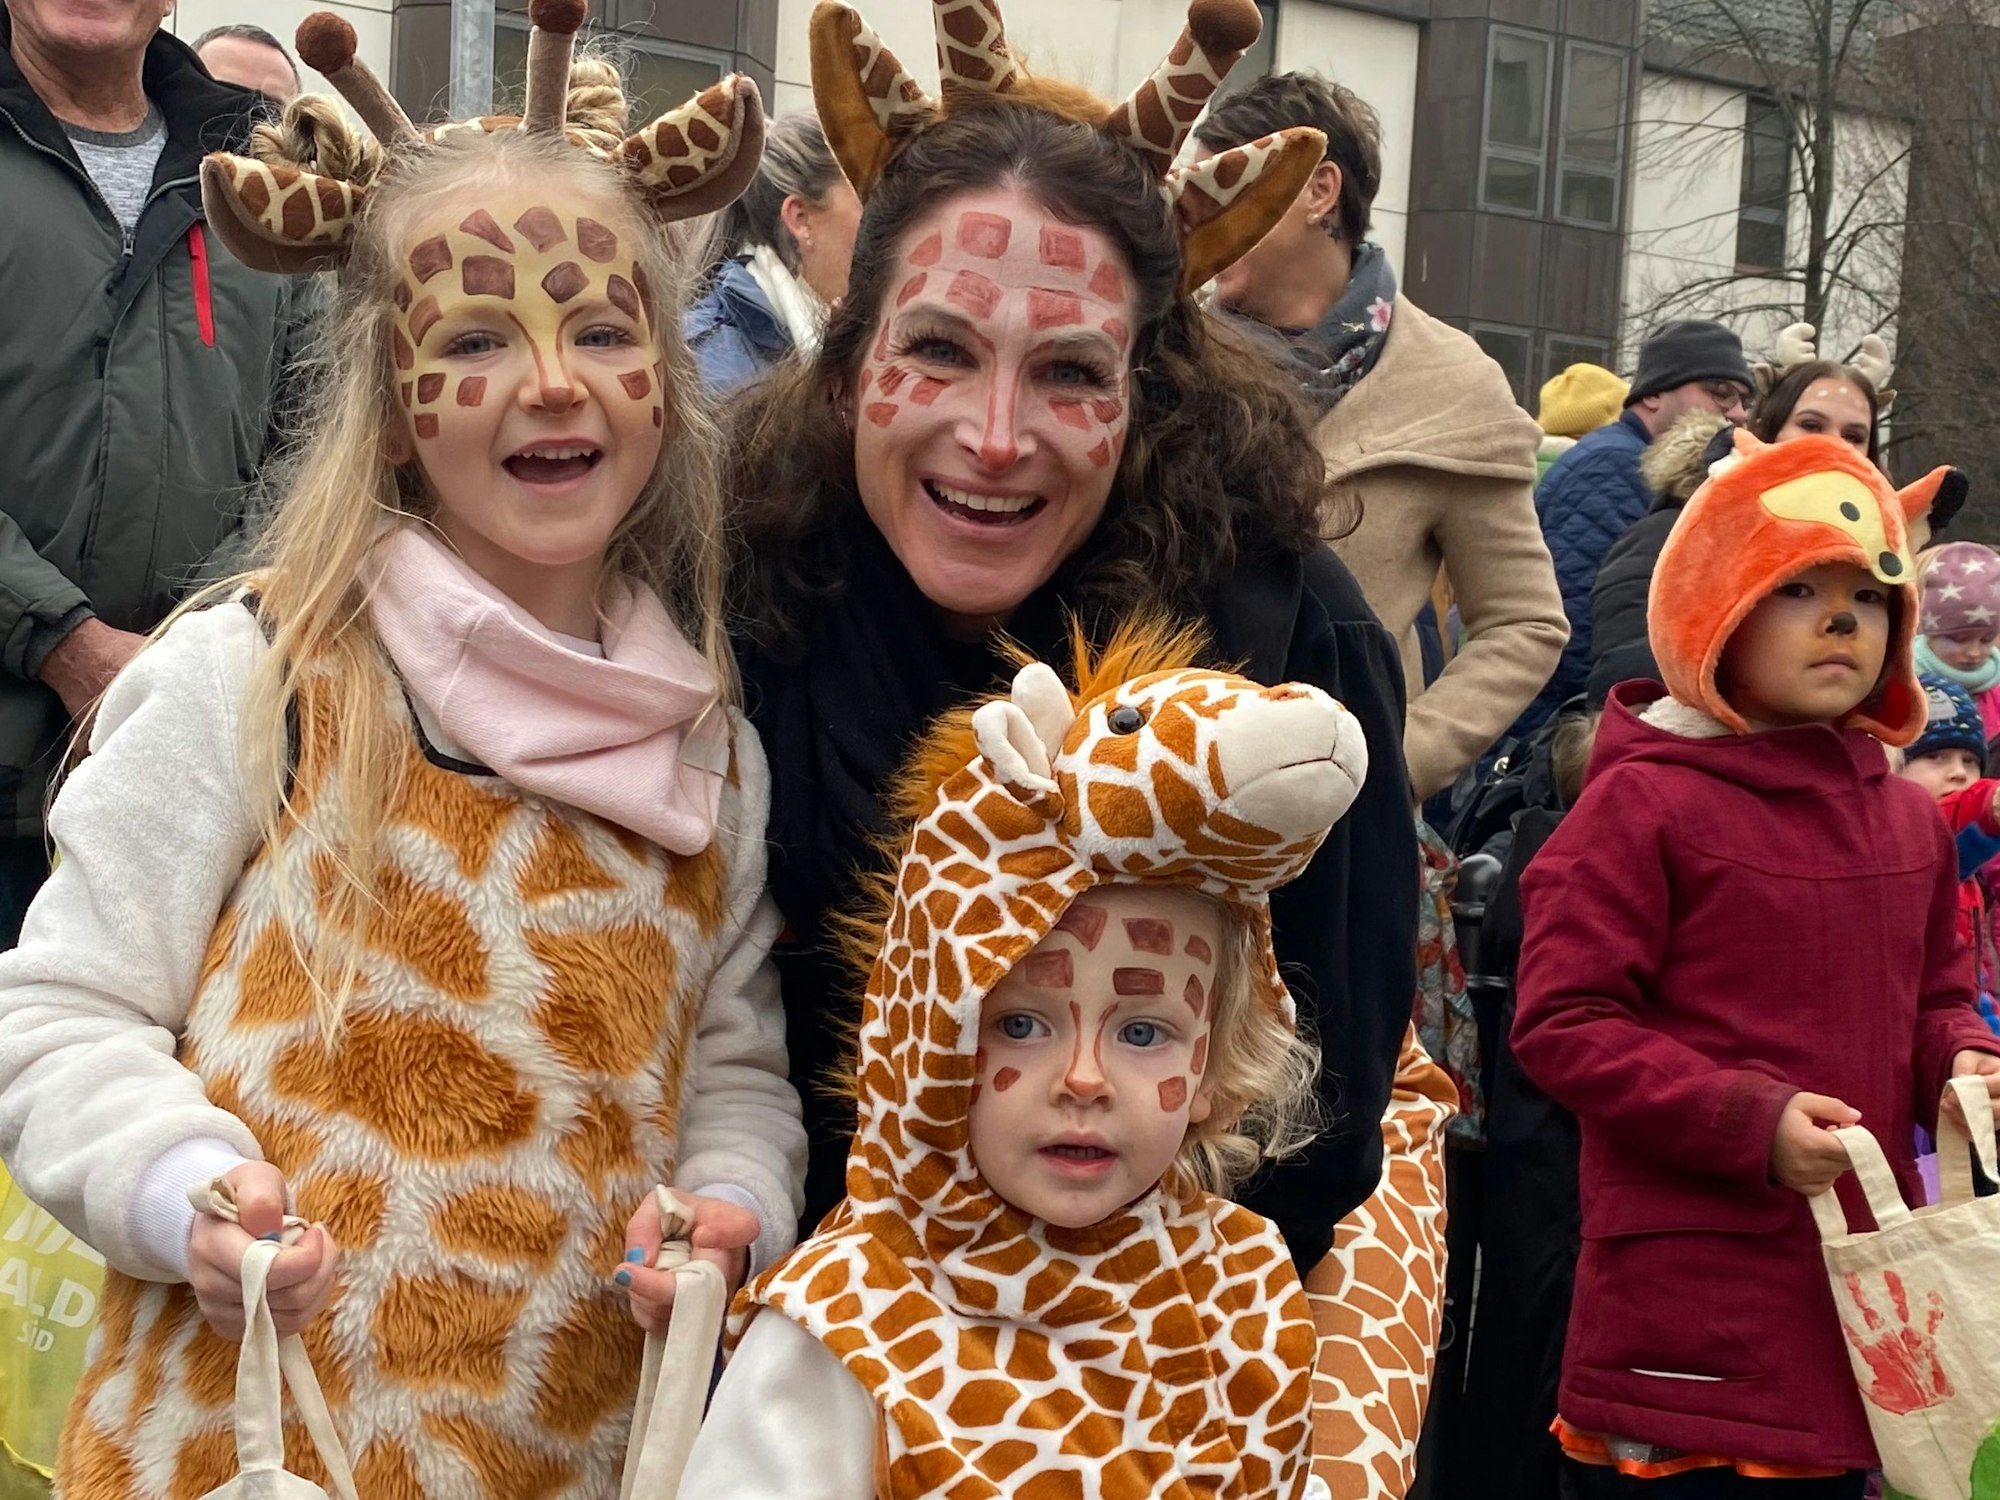 Einige Kinder und eine Frau waren als Giraffen verkleidet.